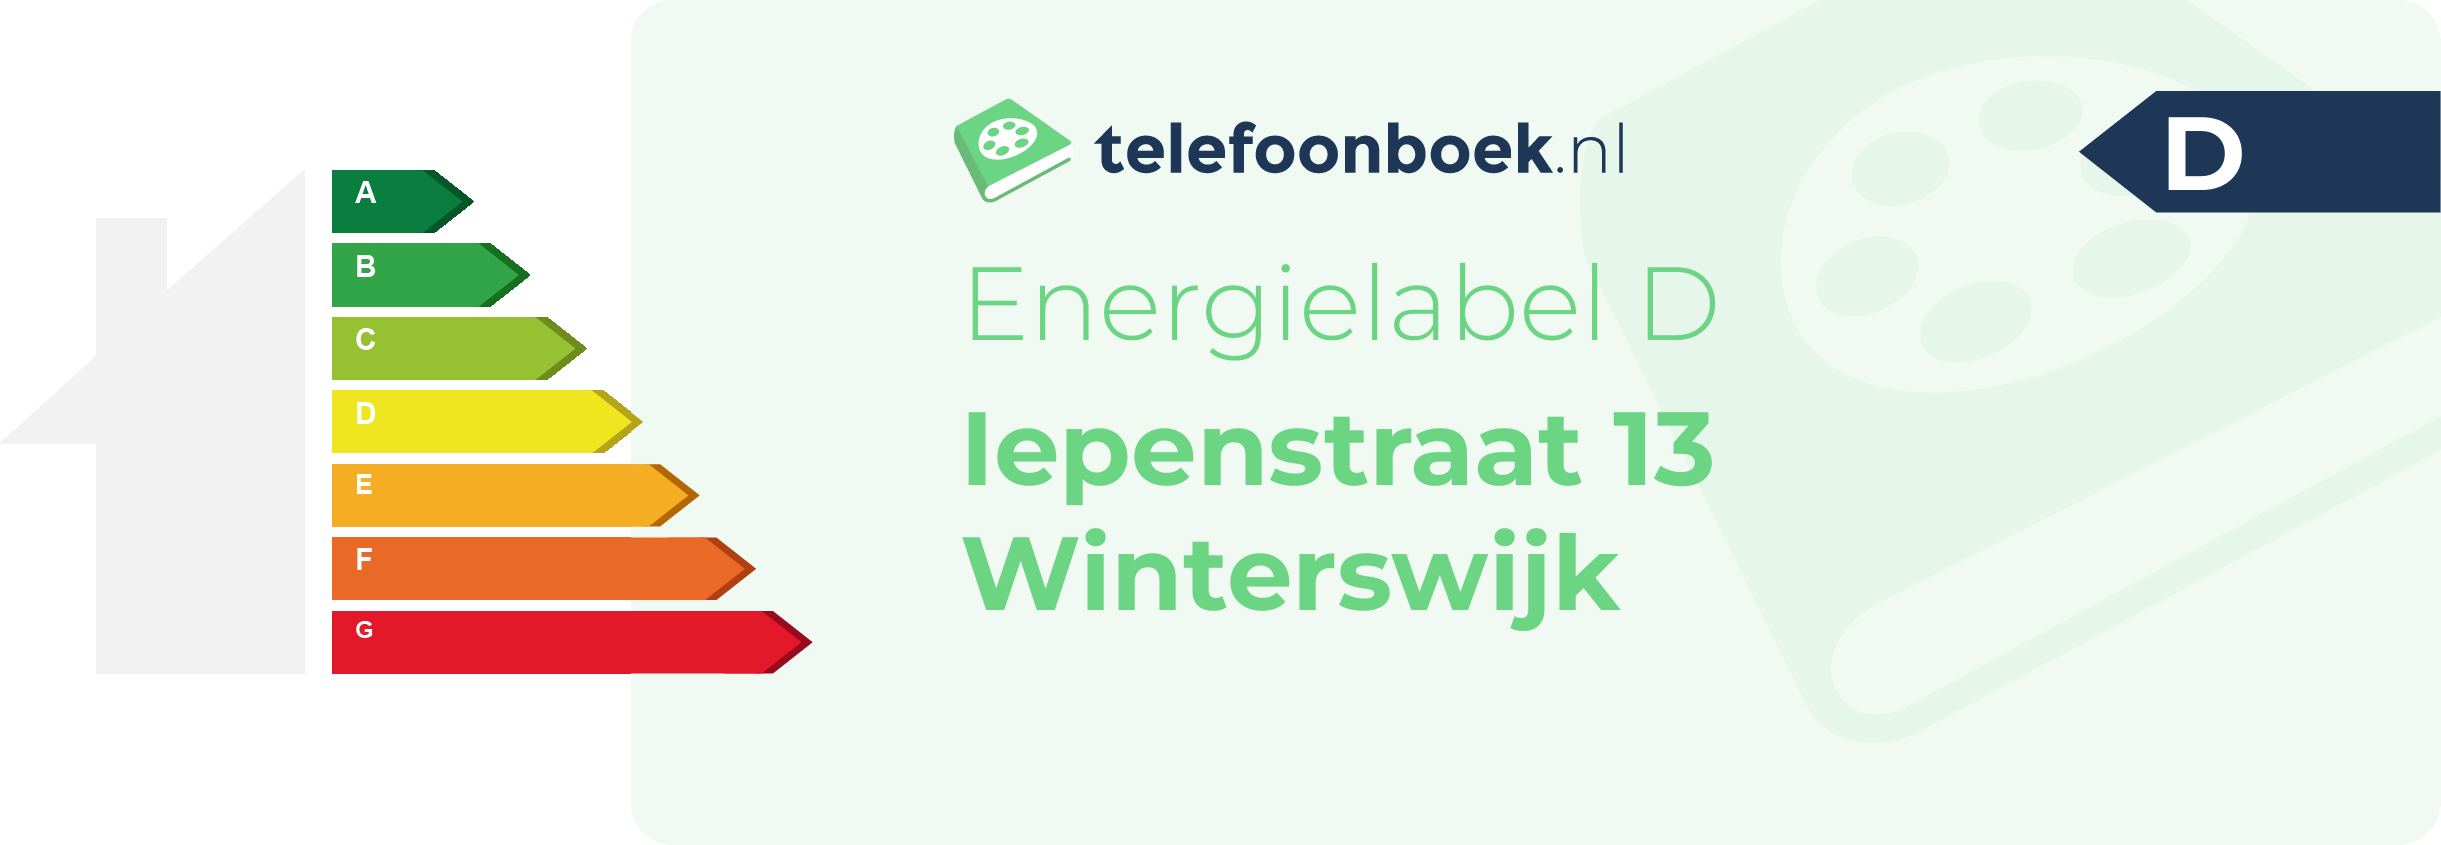 Energielabel Iepenstraat 13 Winterswijk